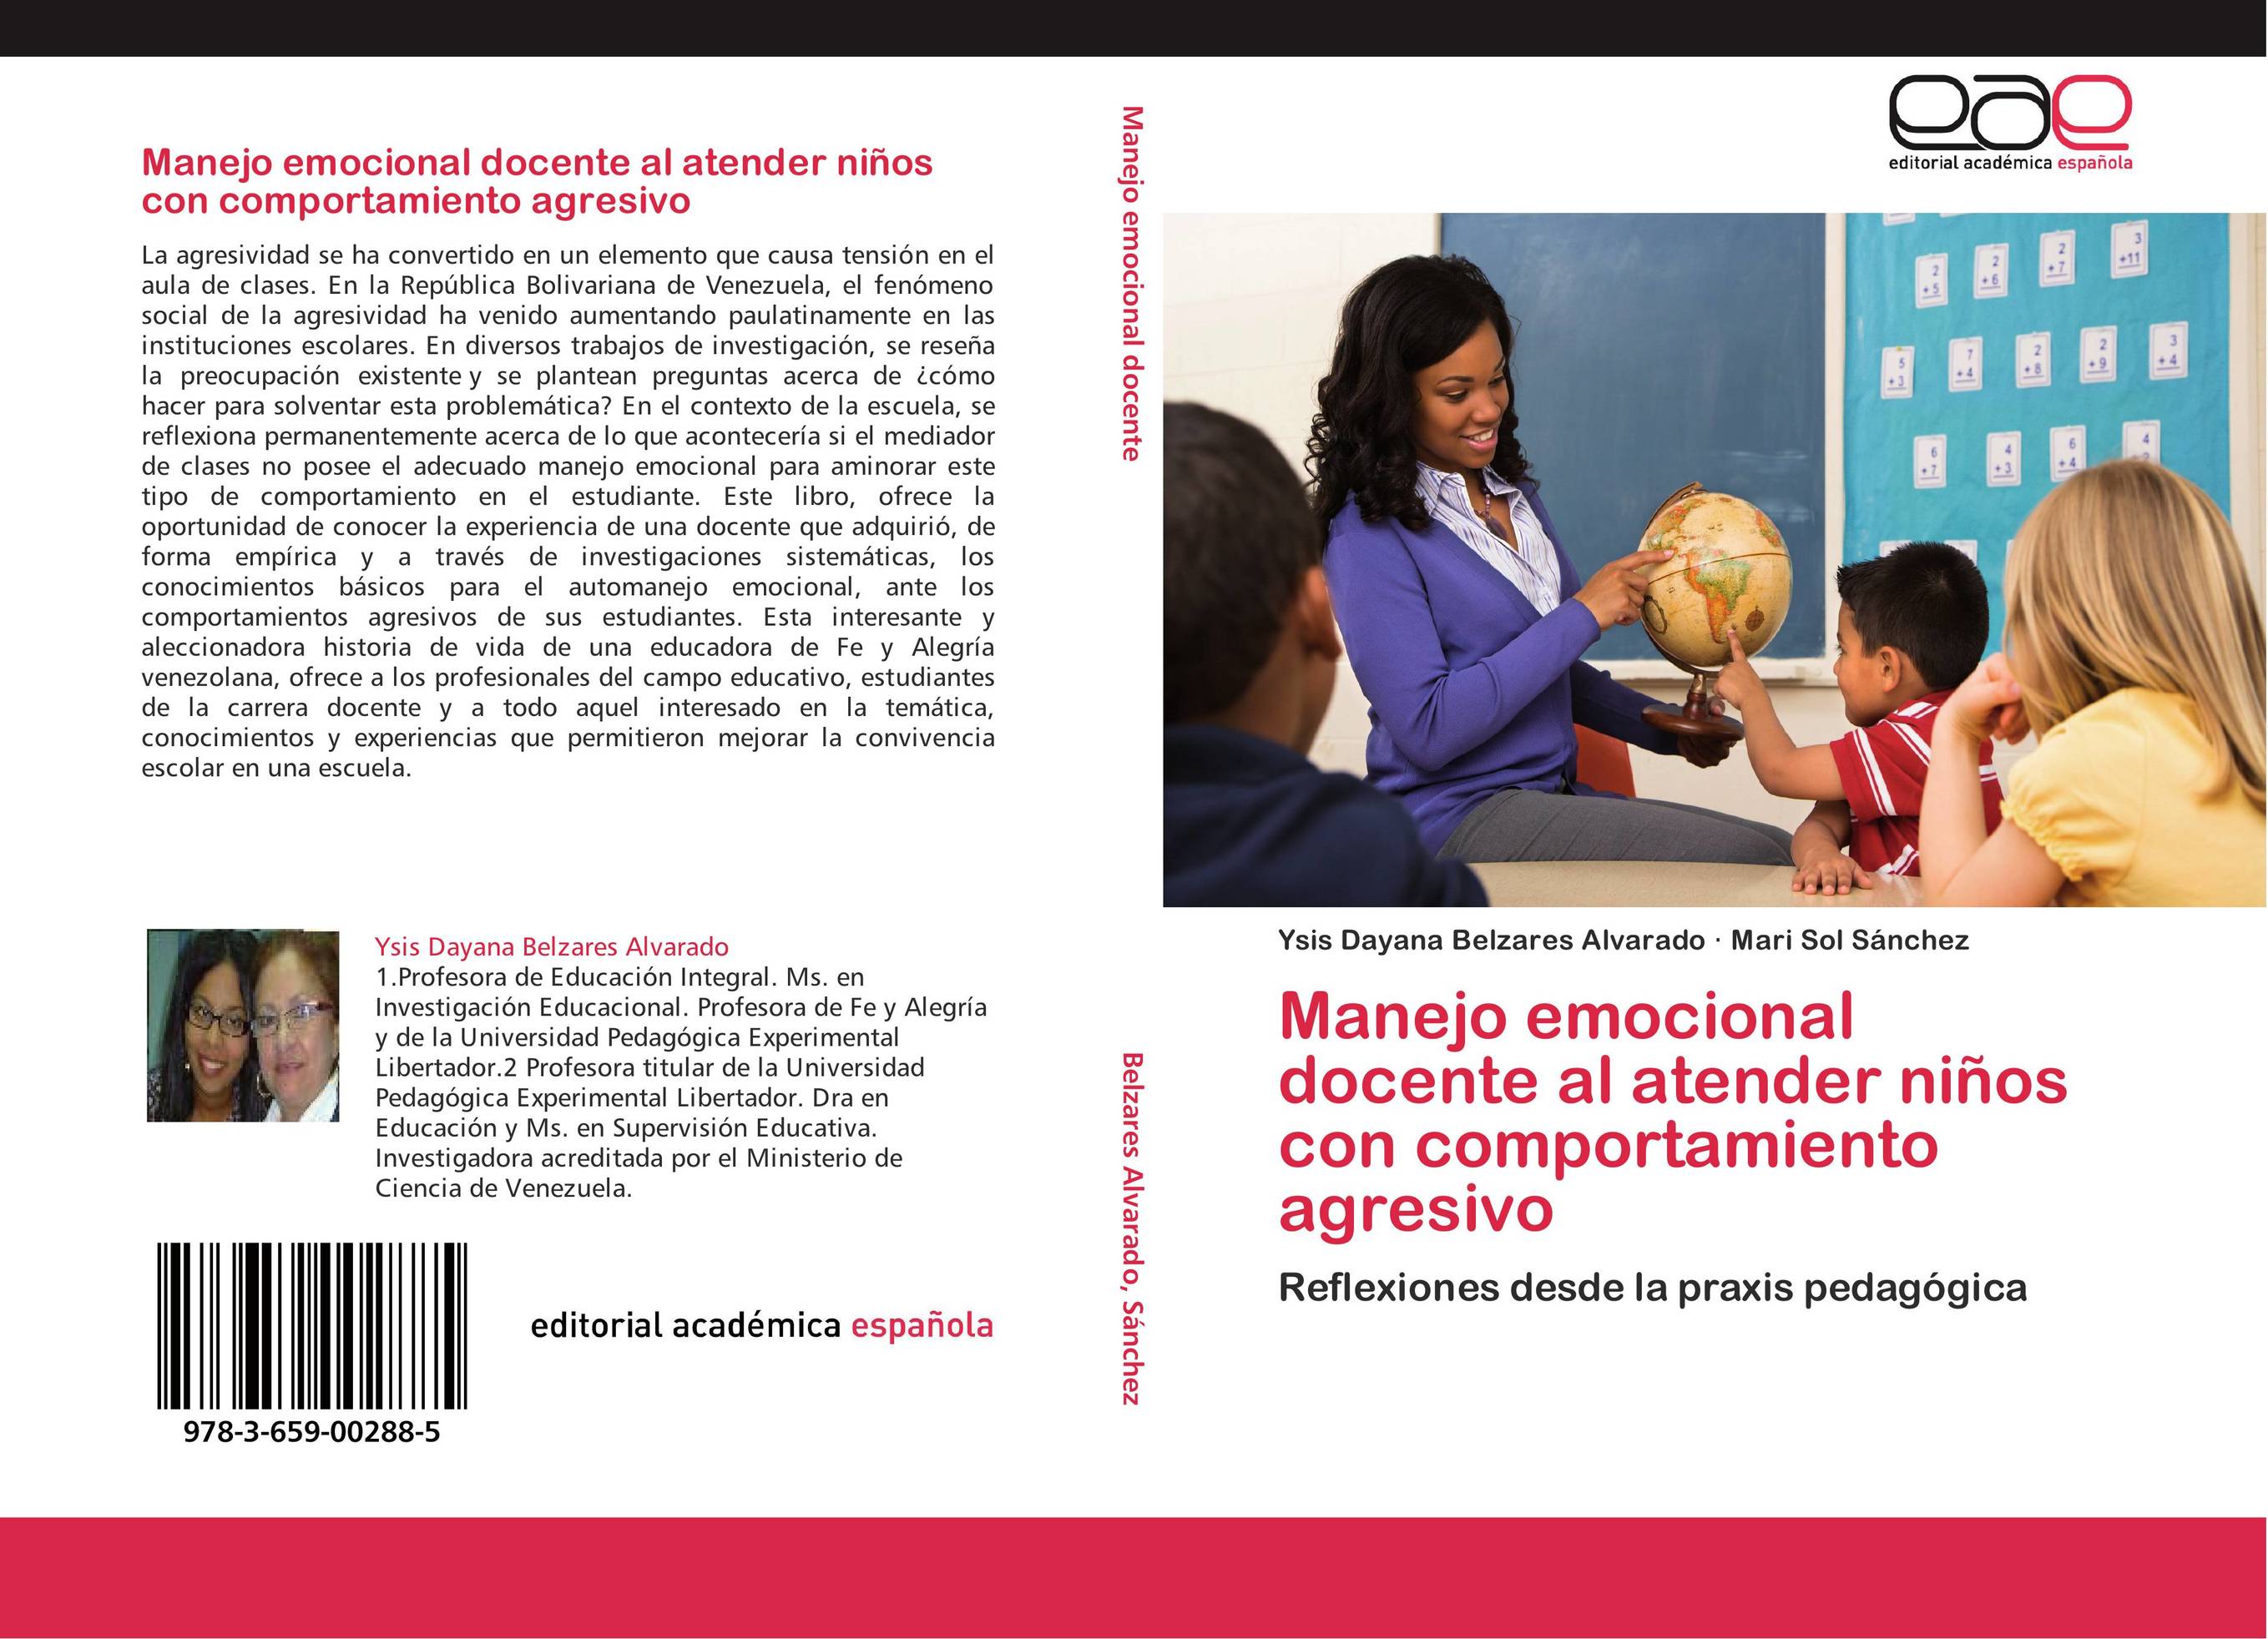 Manejo emocional docente al atender niños con comportamiento agresivo